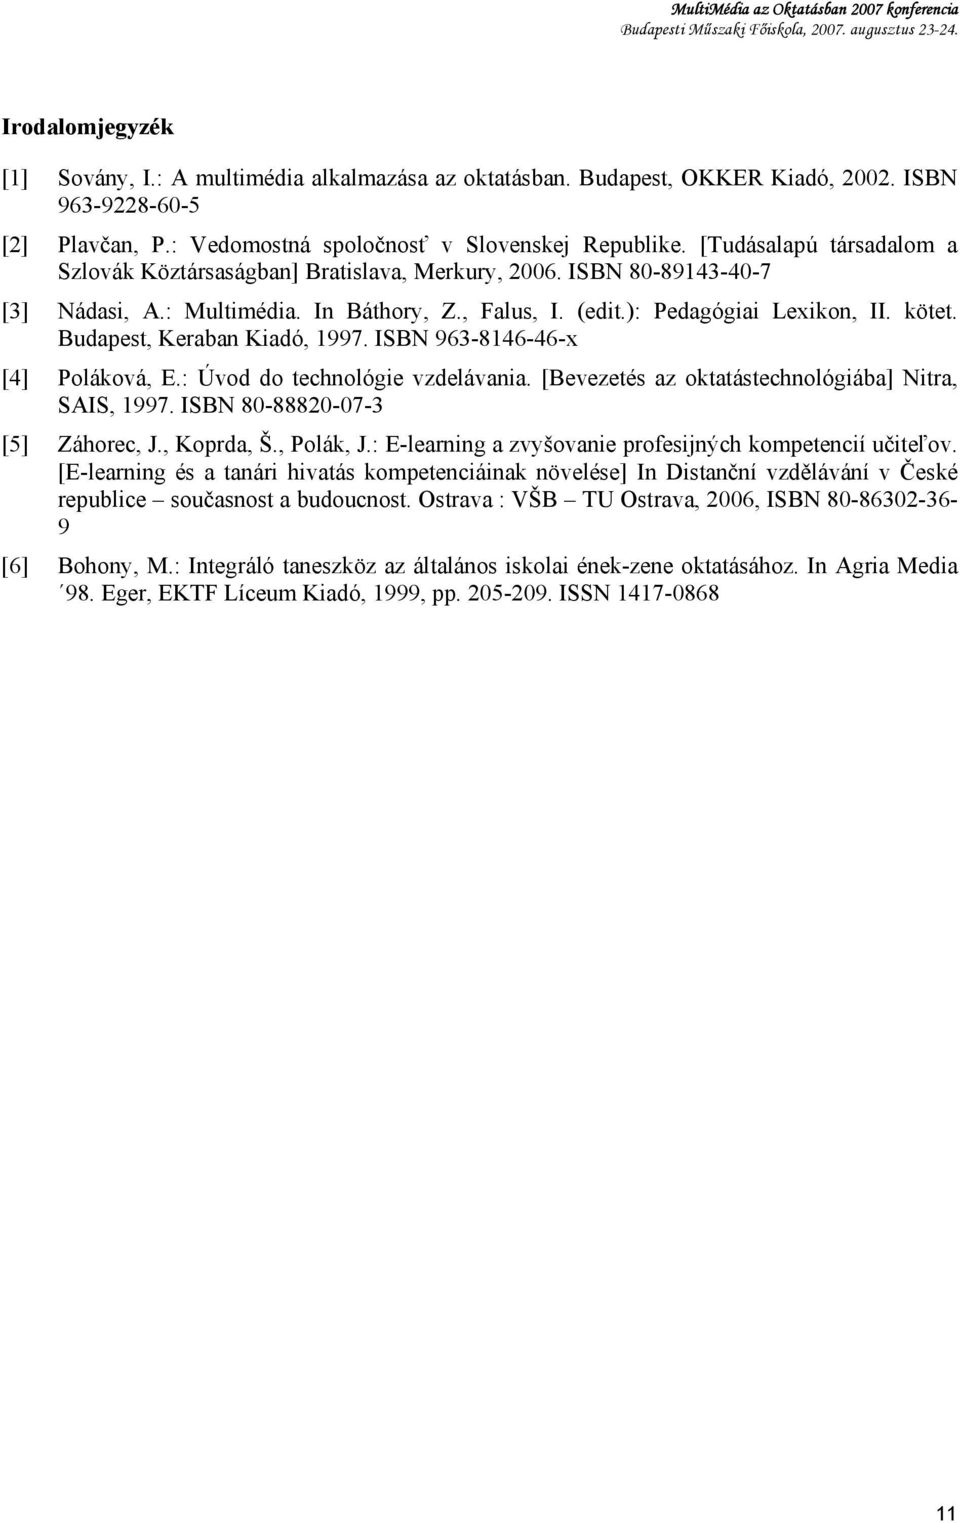 Budapest, Keraban Kiadó, 1997. ISBN 963-8146-46-x [4] Poláková, E.: Úvod do technológie vzdelávania. [Bevezetés az oktatástechnológiába] Nitra, SAIS, 1997. ISBN 80-88820-07-3 [5] Záhorec, J.